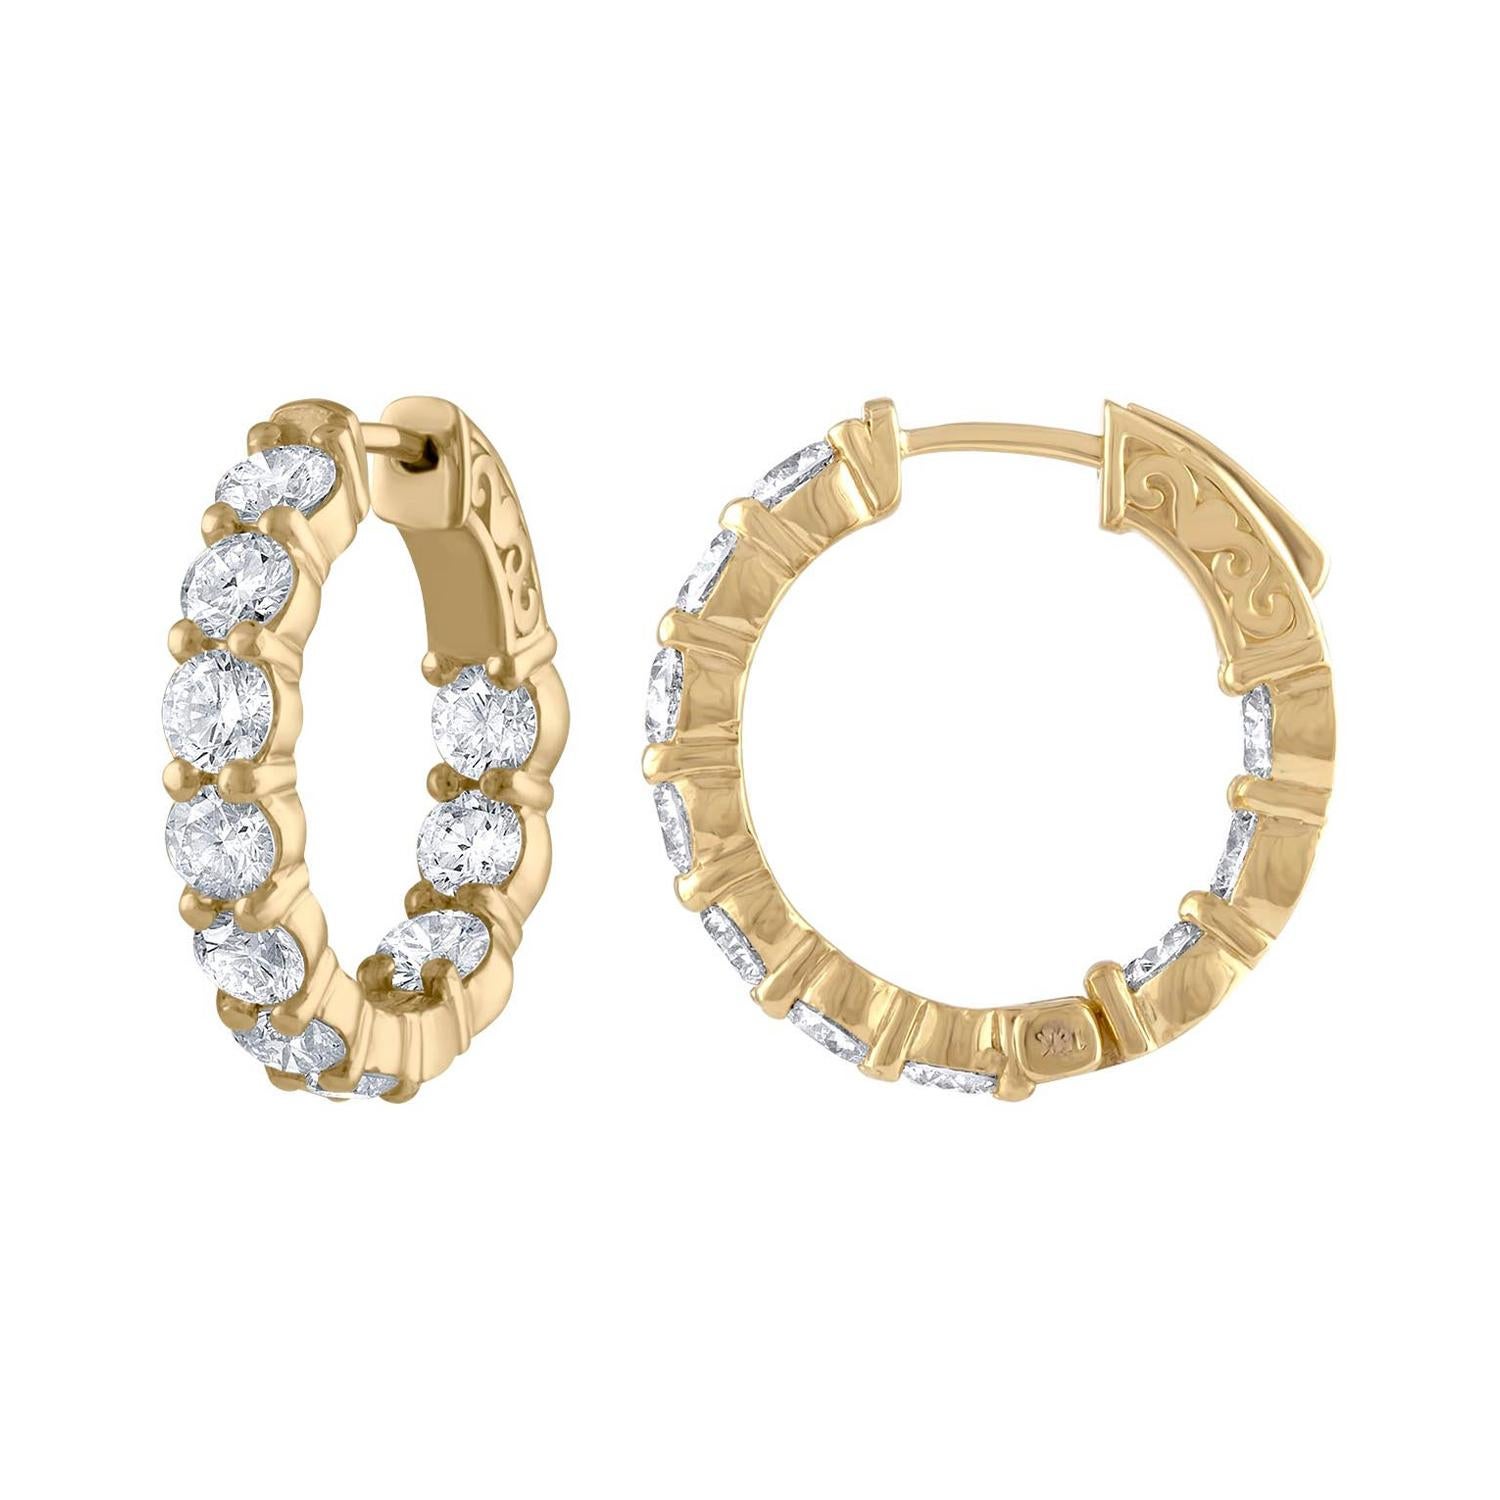 Diana M. Fine Jewelry 18k 2.65 Ct. Tw. Diamond Drop Earrings For Sale ...